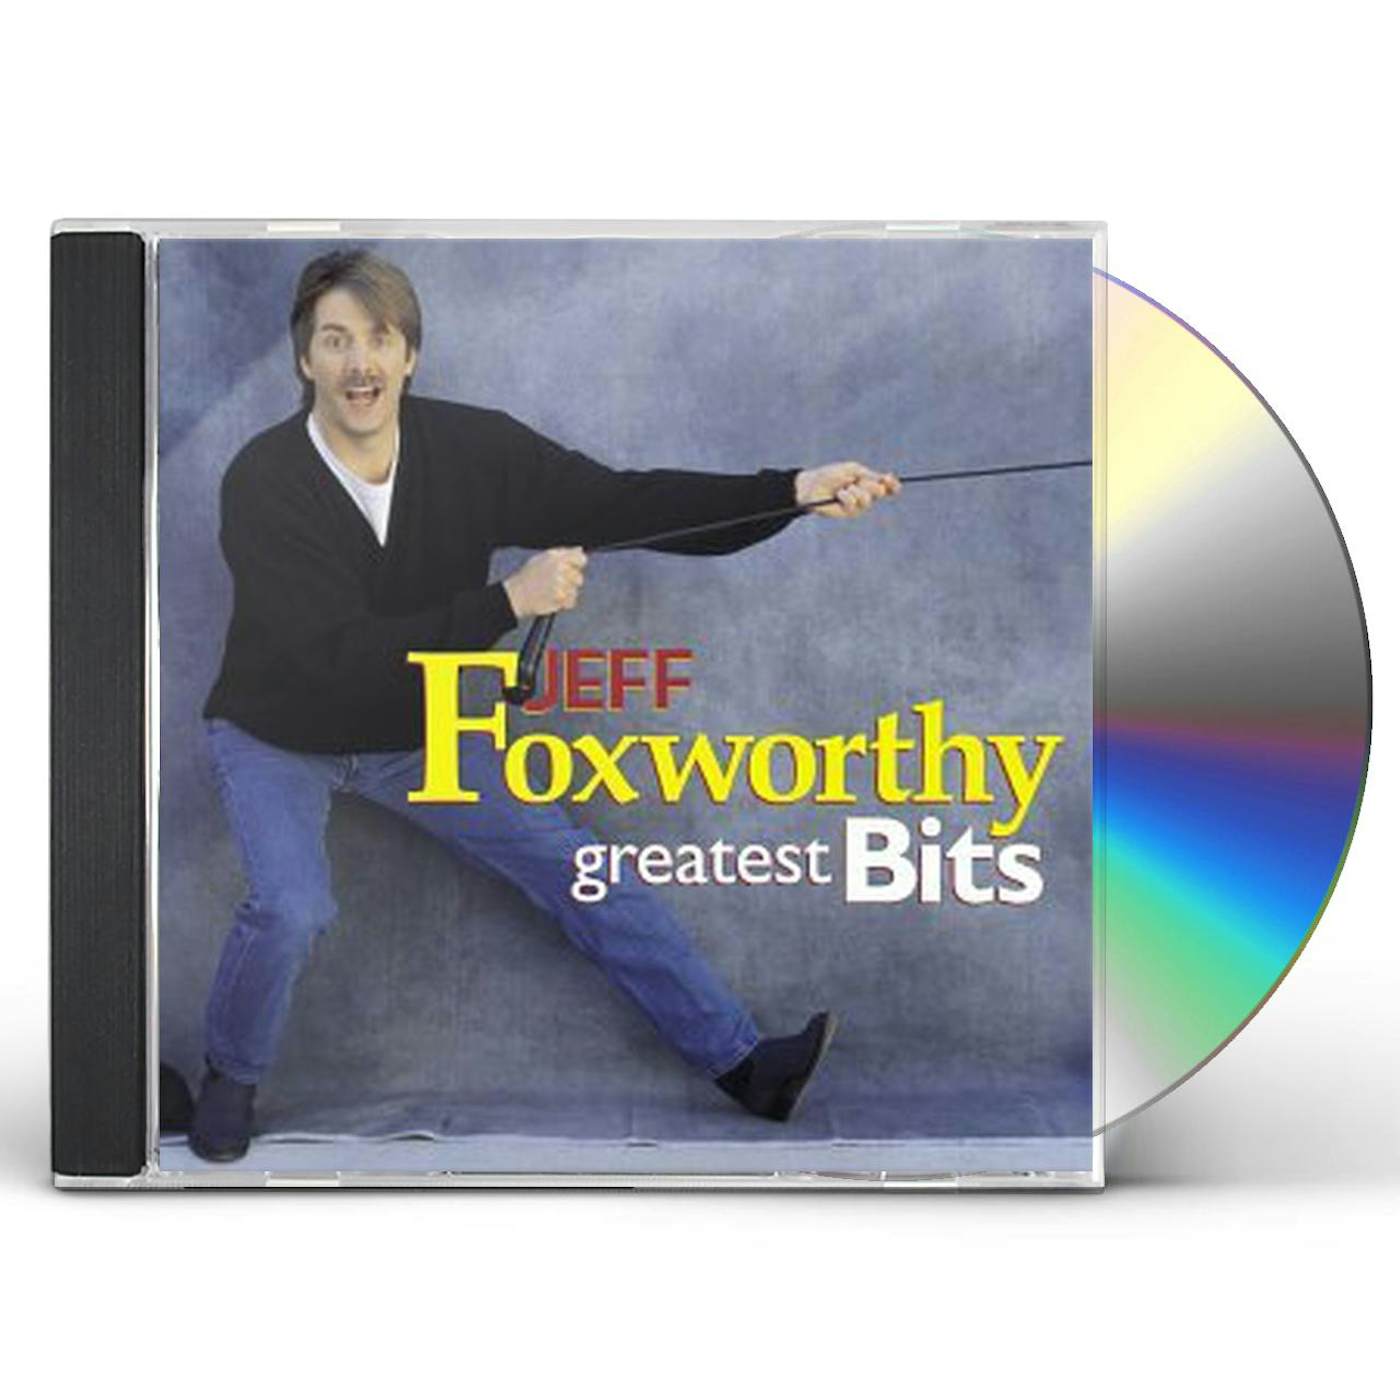 Jeff Foxworthy GREATEST BITS CD